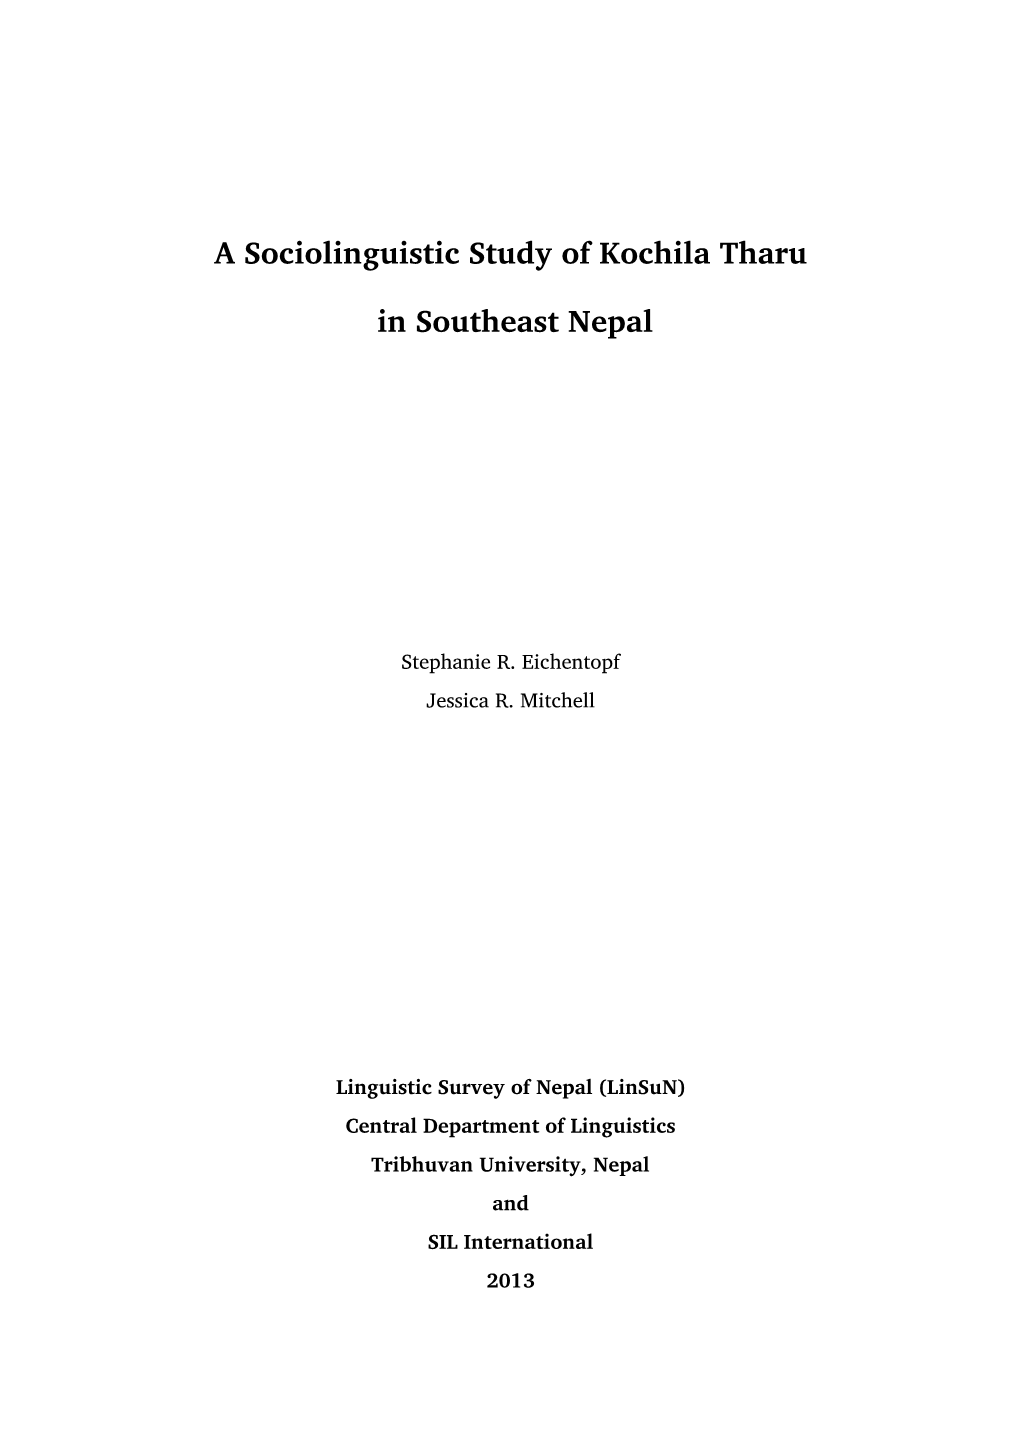 A Sociolinguistic Study of Kochila Tharu In